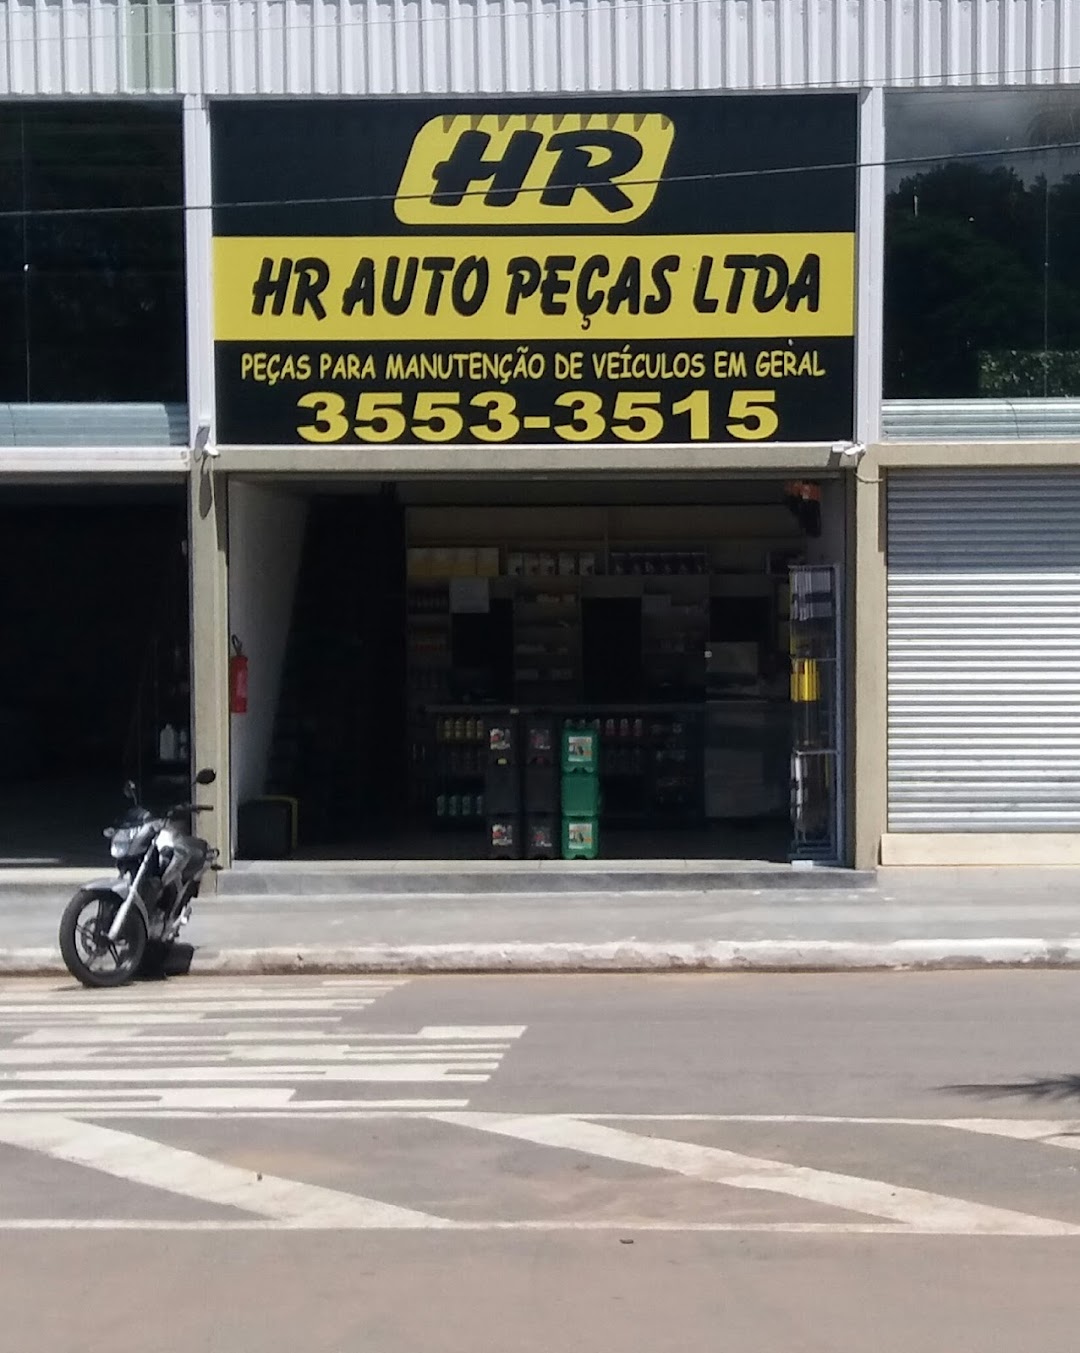 HR AUTO PEÇAS LTDA